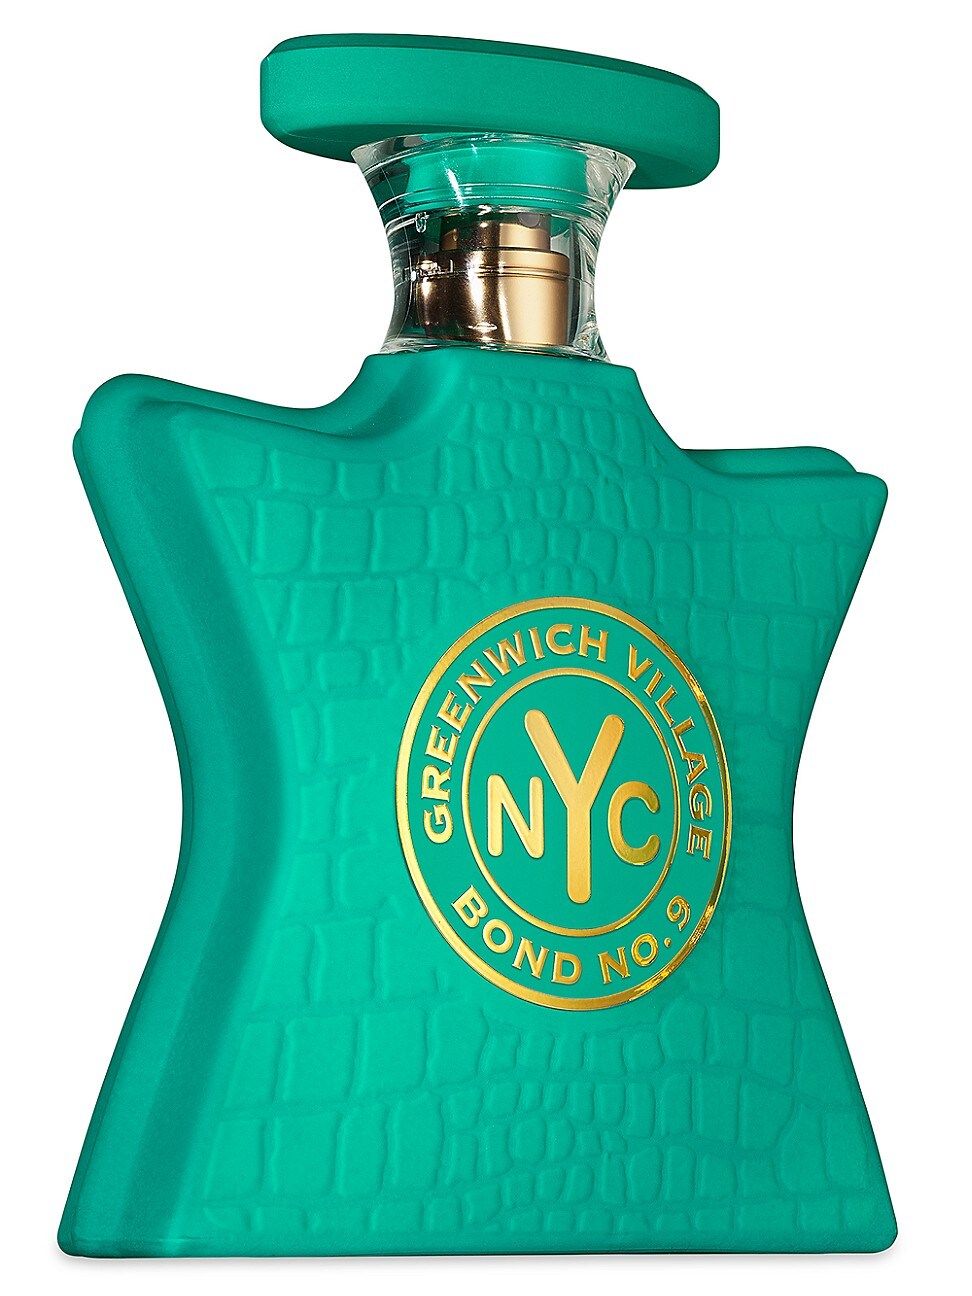 Women's Bond No. 9 Greenwich Village Perfume - Size 2.5-3.4 oz. - Size 2.5-3.4 oz. | Saks Fifth Avenue